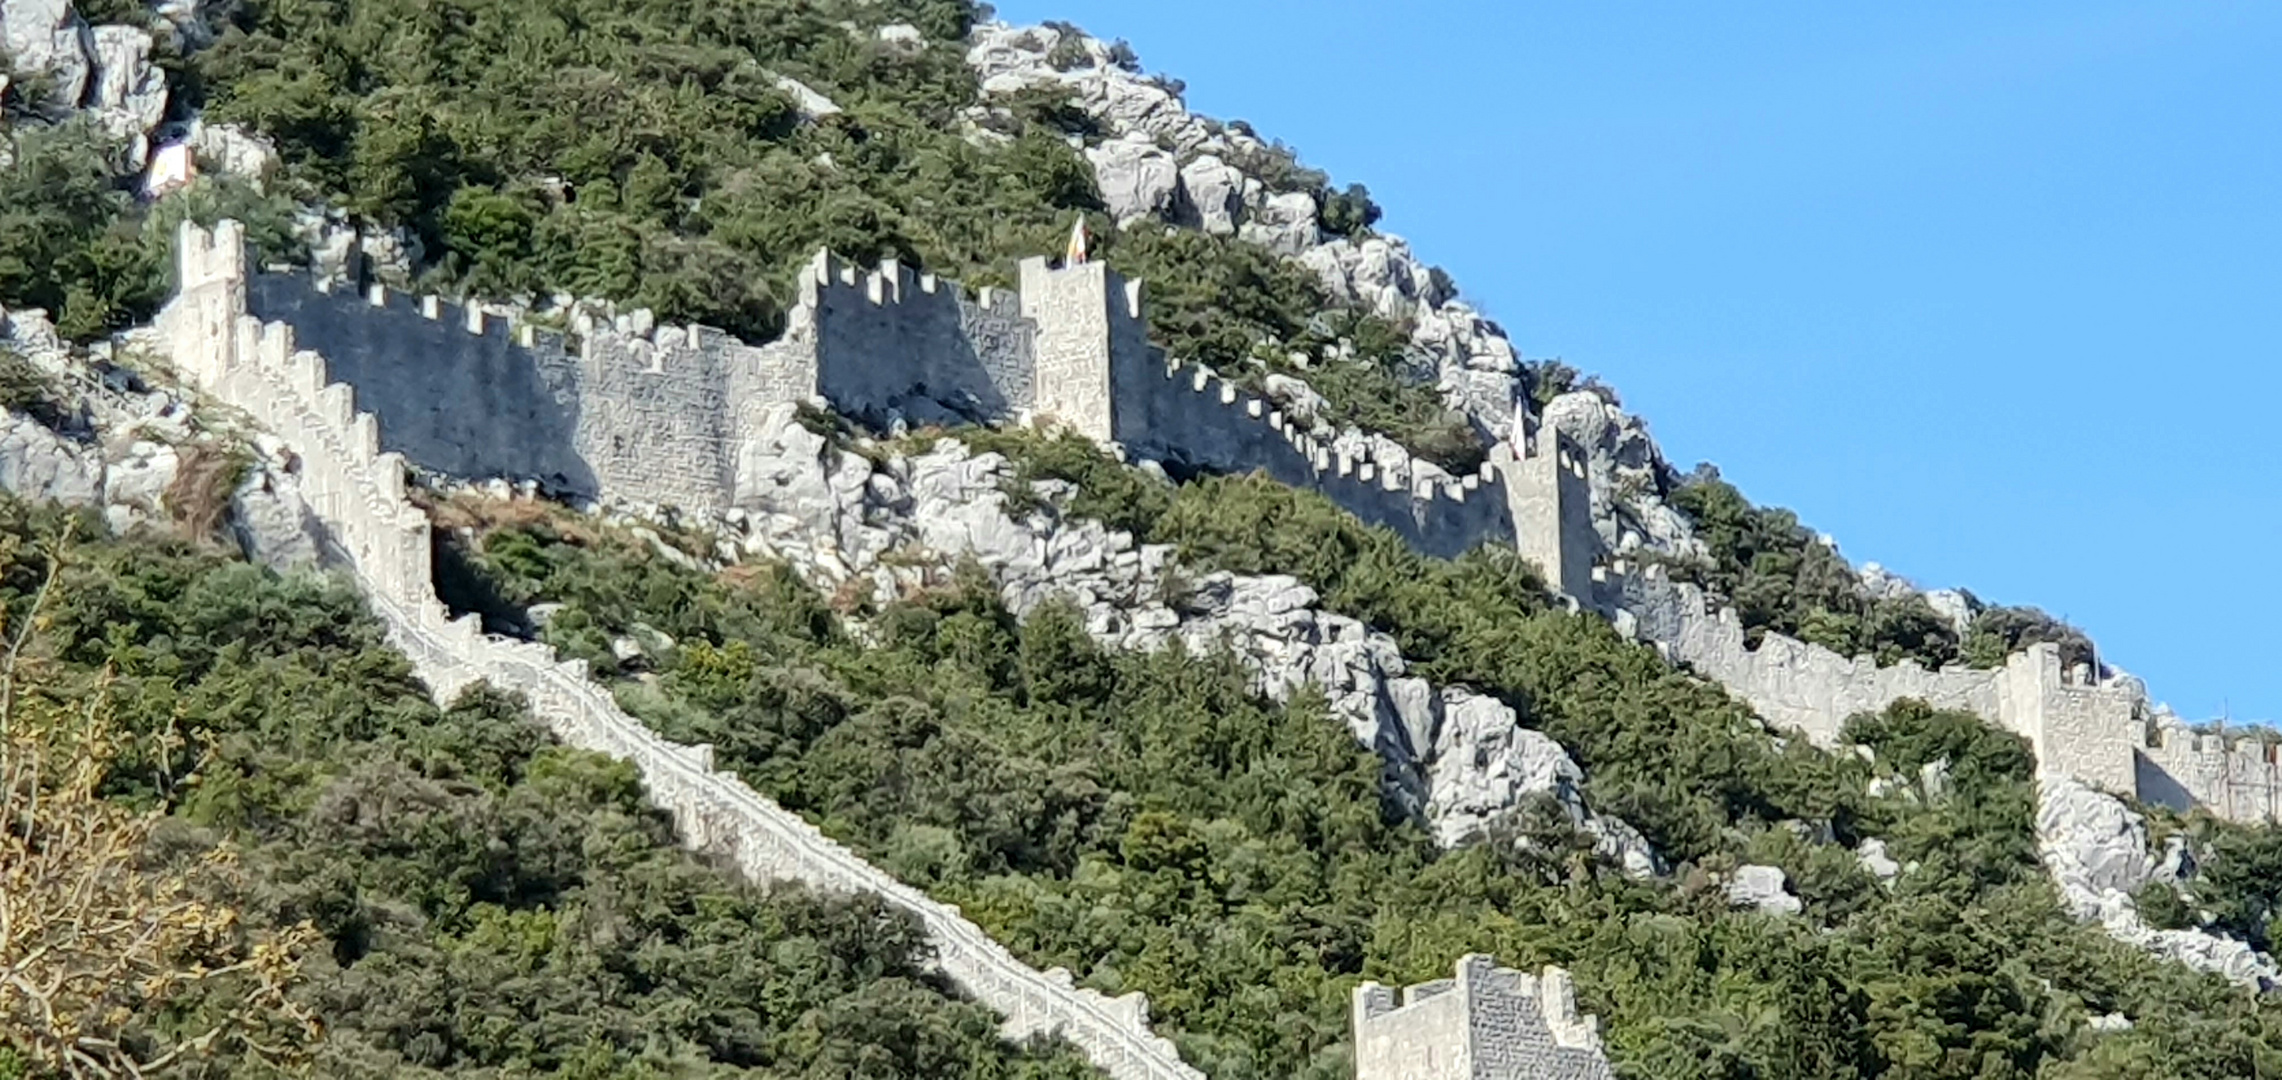 Festungsmauern von Ston in Kroatien